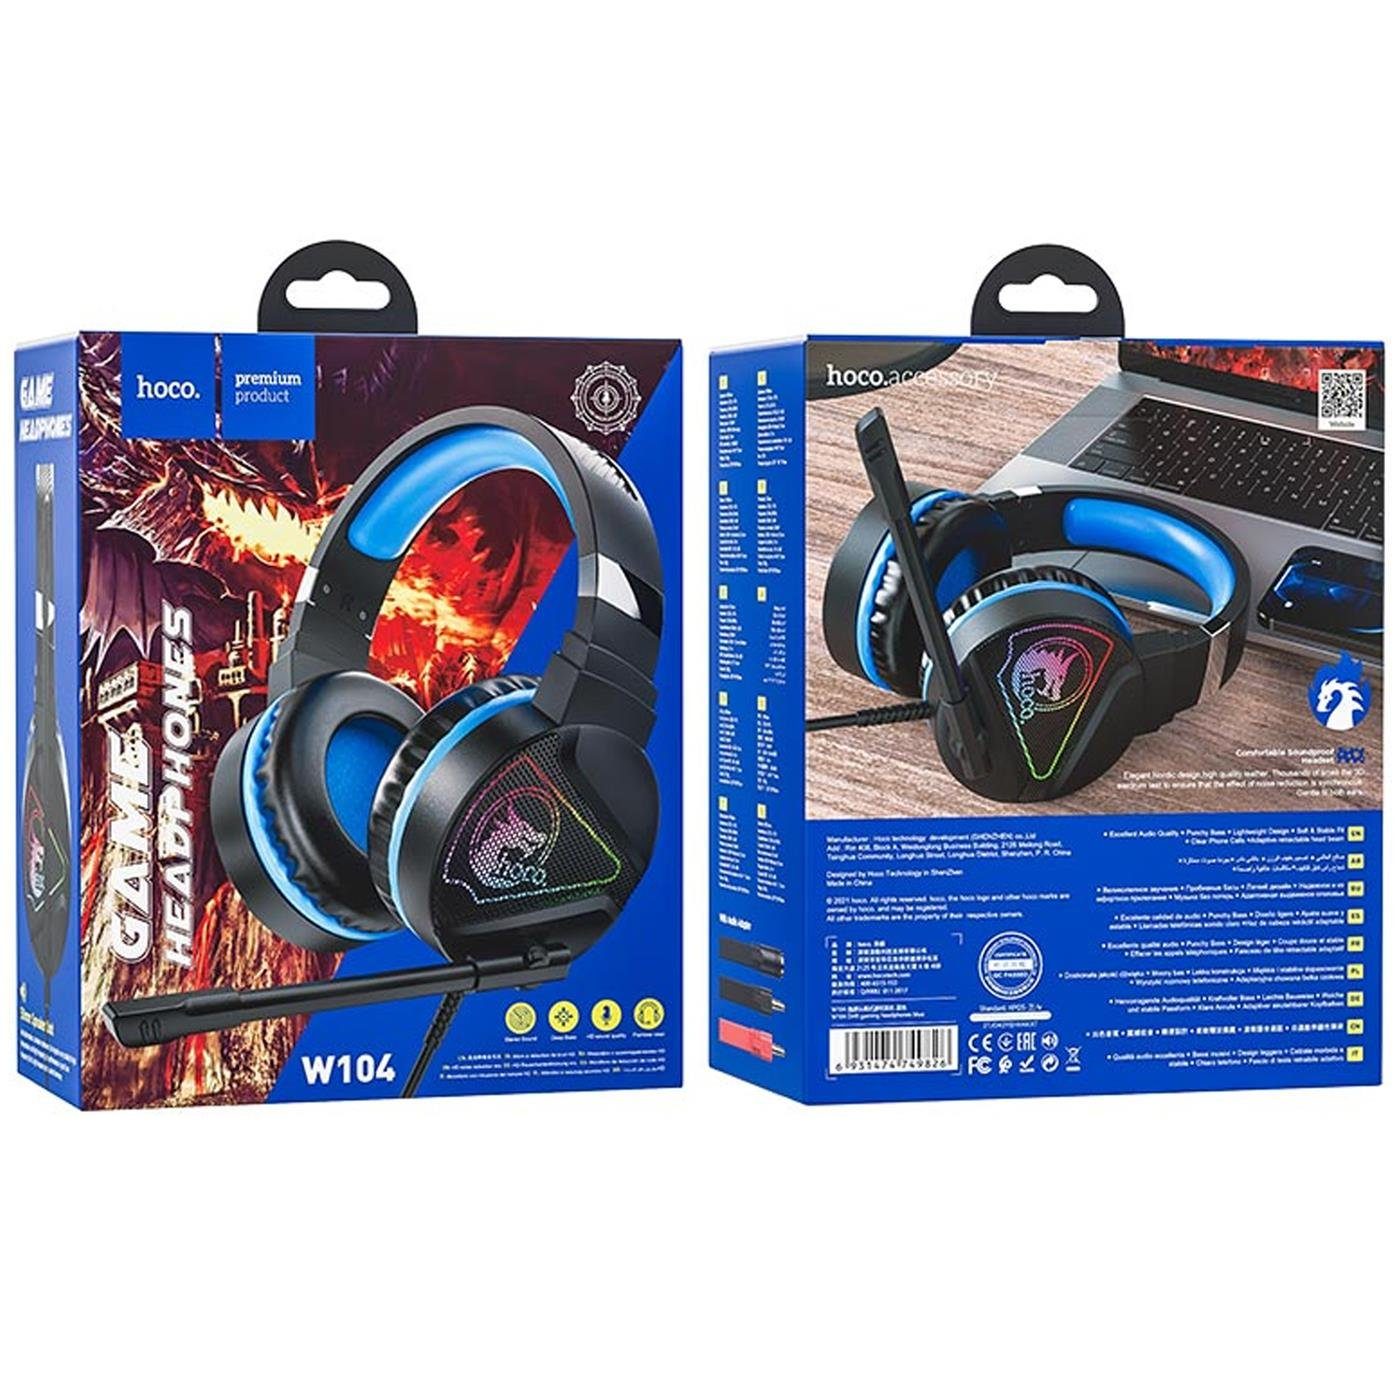 HOCO W104 Stereo Kopfhörer (Stylische Mikrofon und PC-Headset Gaming Blau Gaming Beleuchtung) mit LED